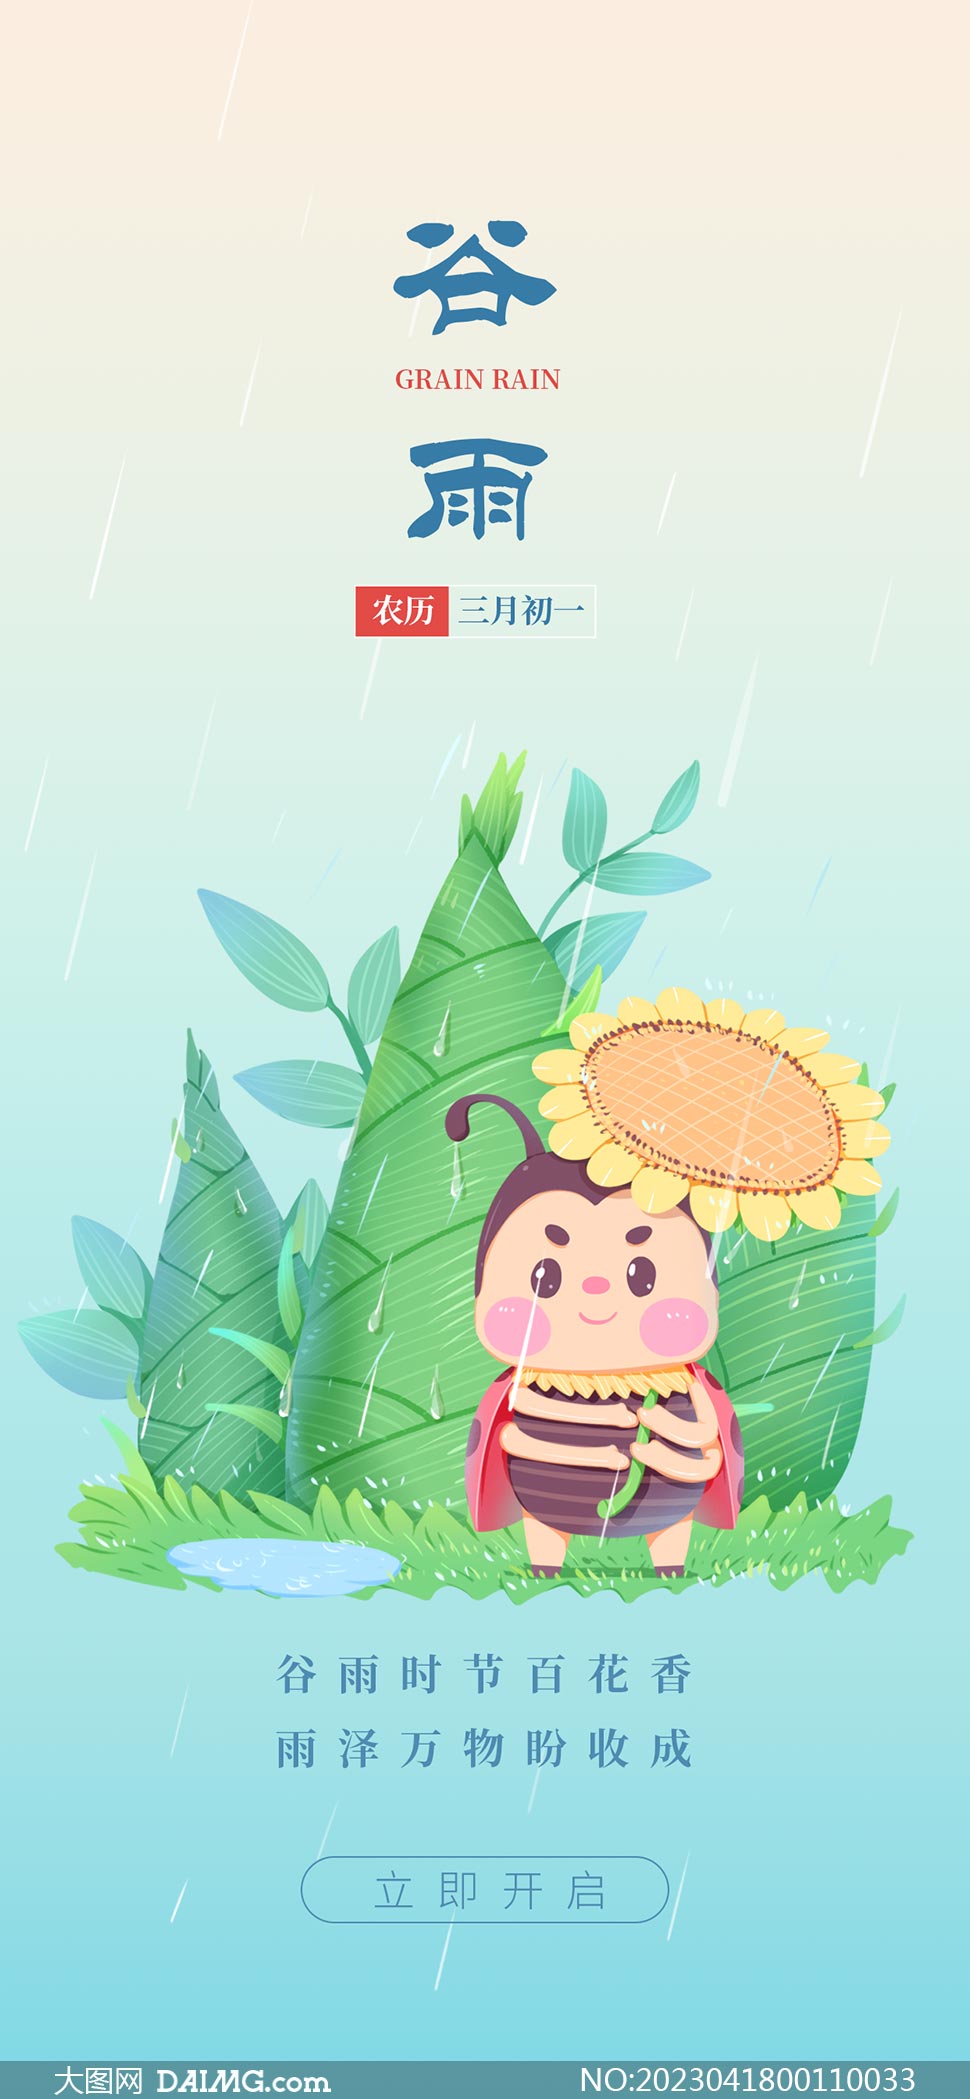 雨中小蜜蜂主题谷雨节气手机端海报PSD素材